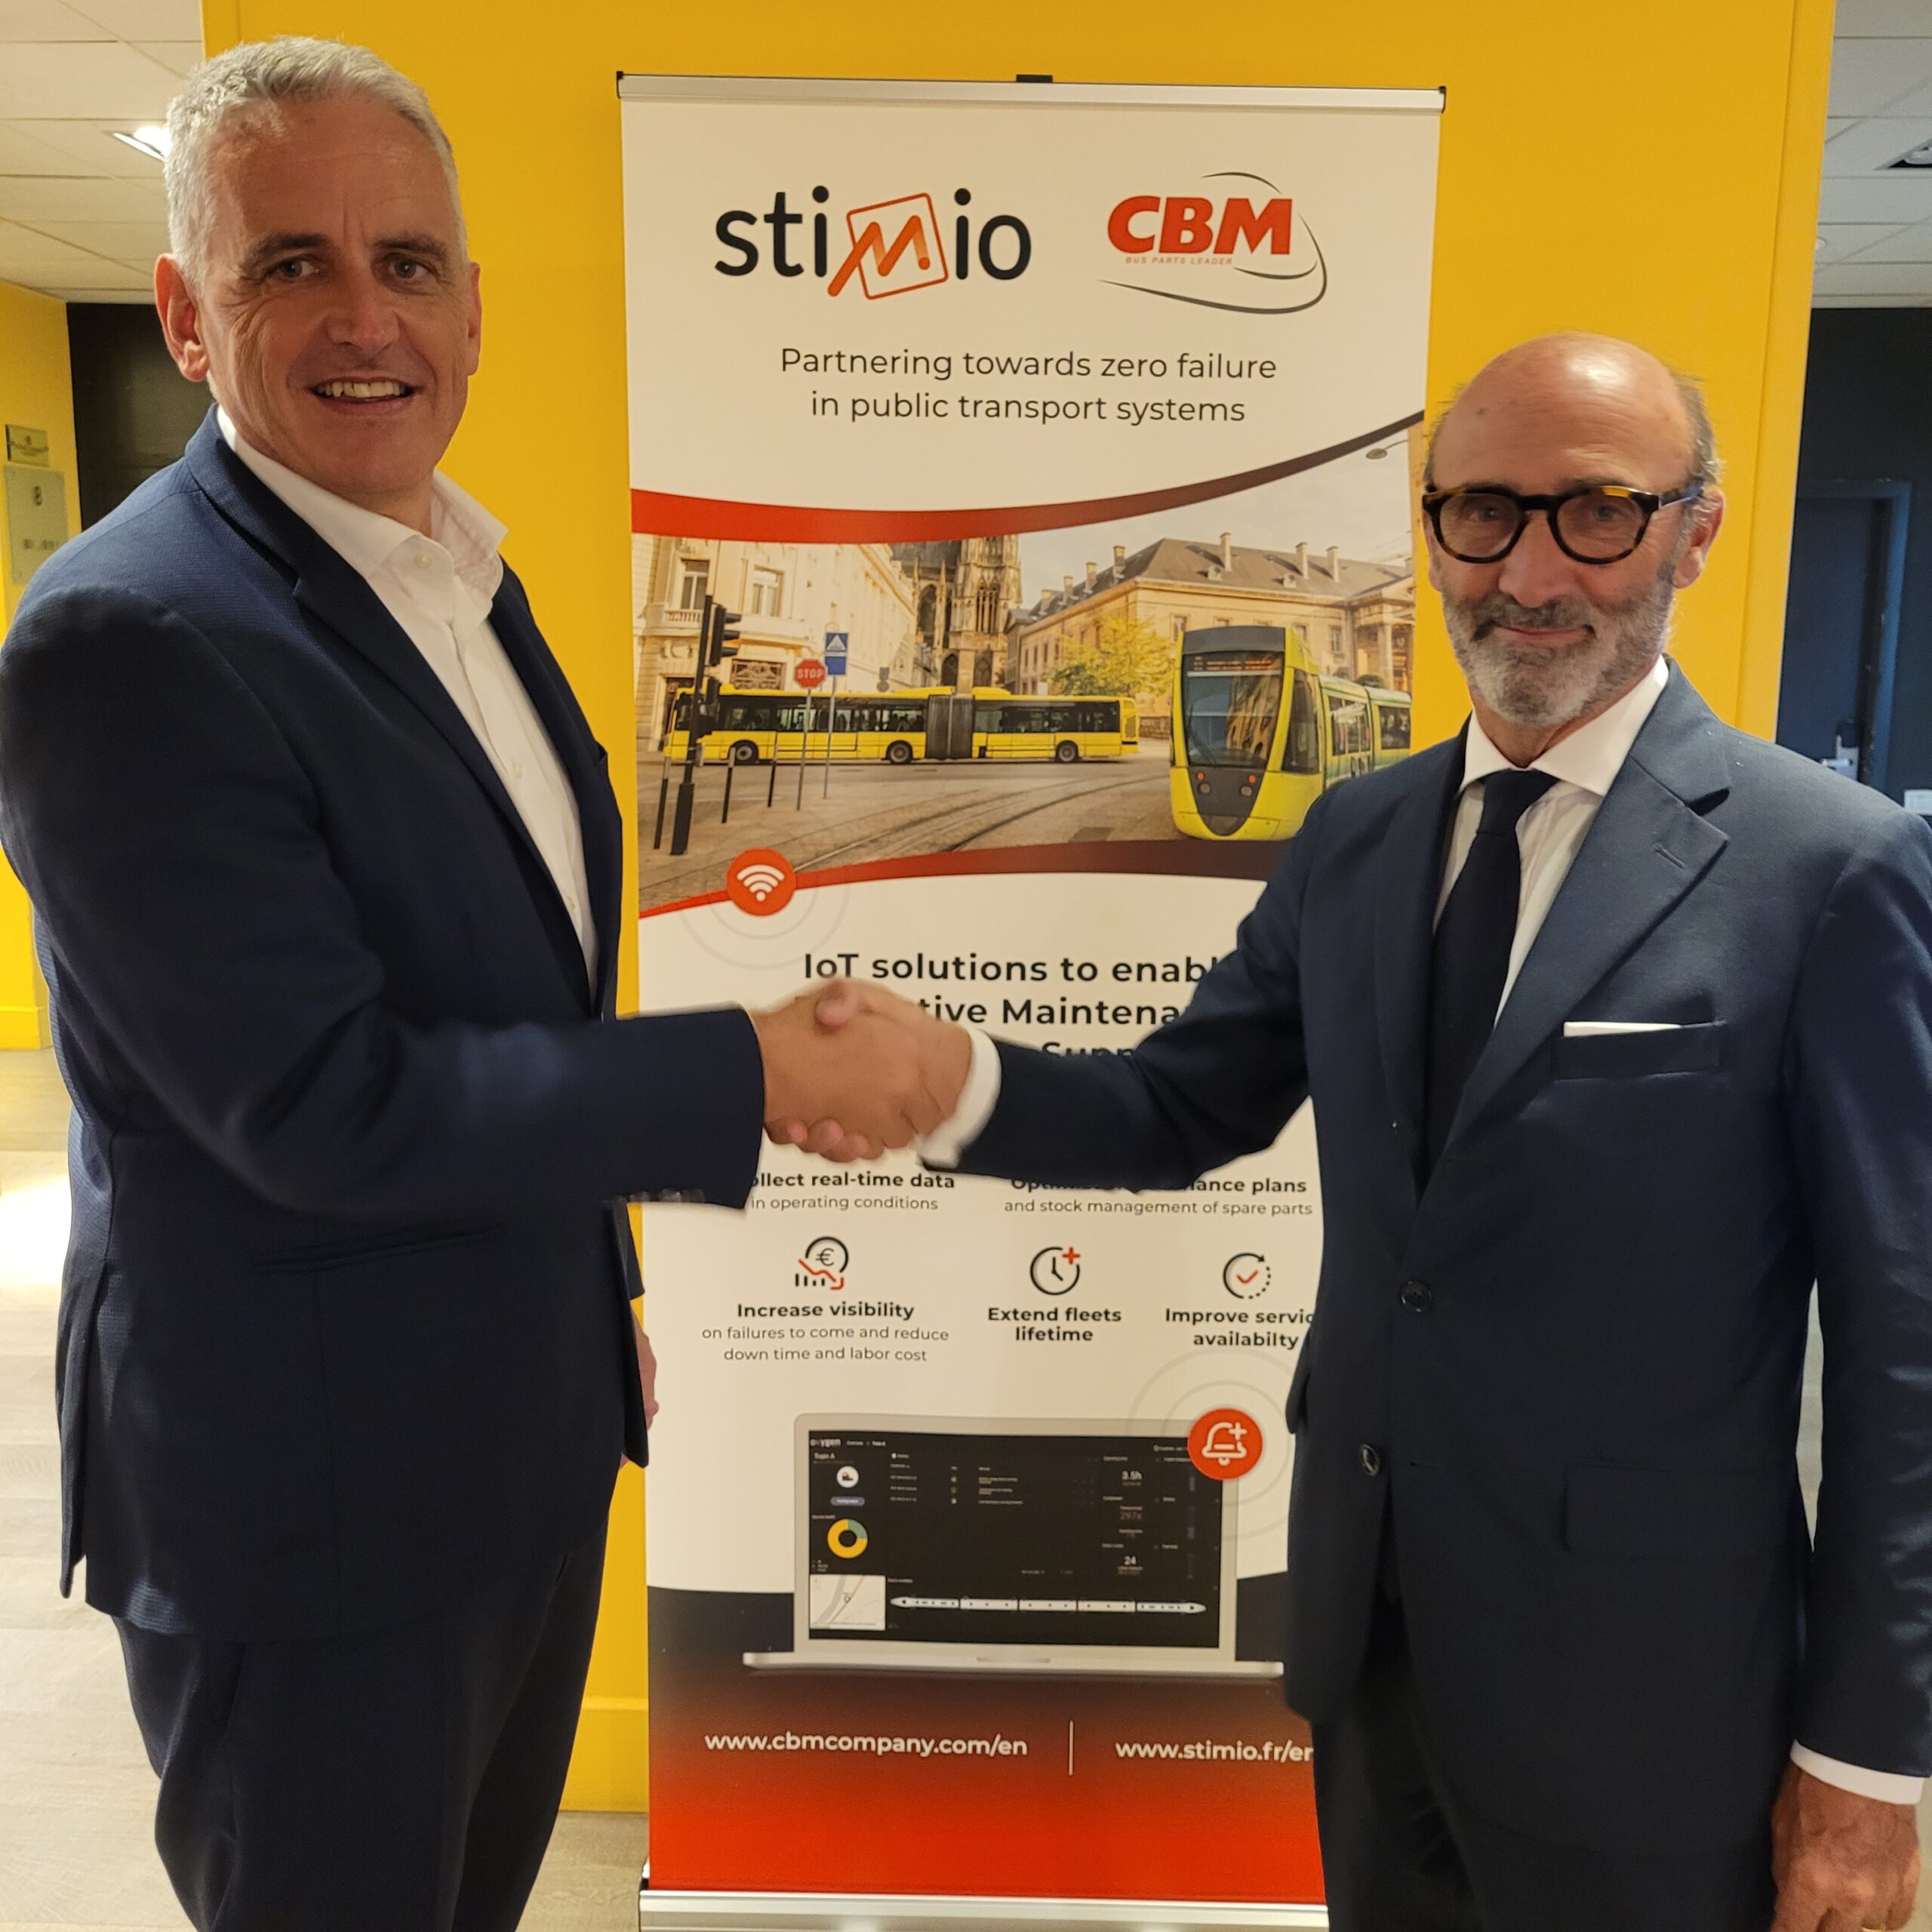 Partenariat Stimio et CBM